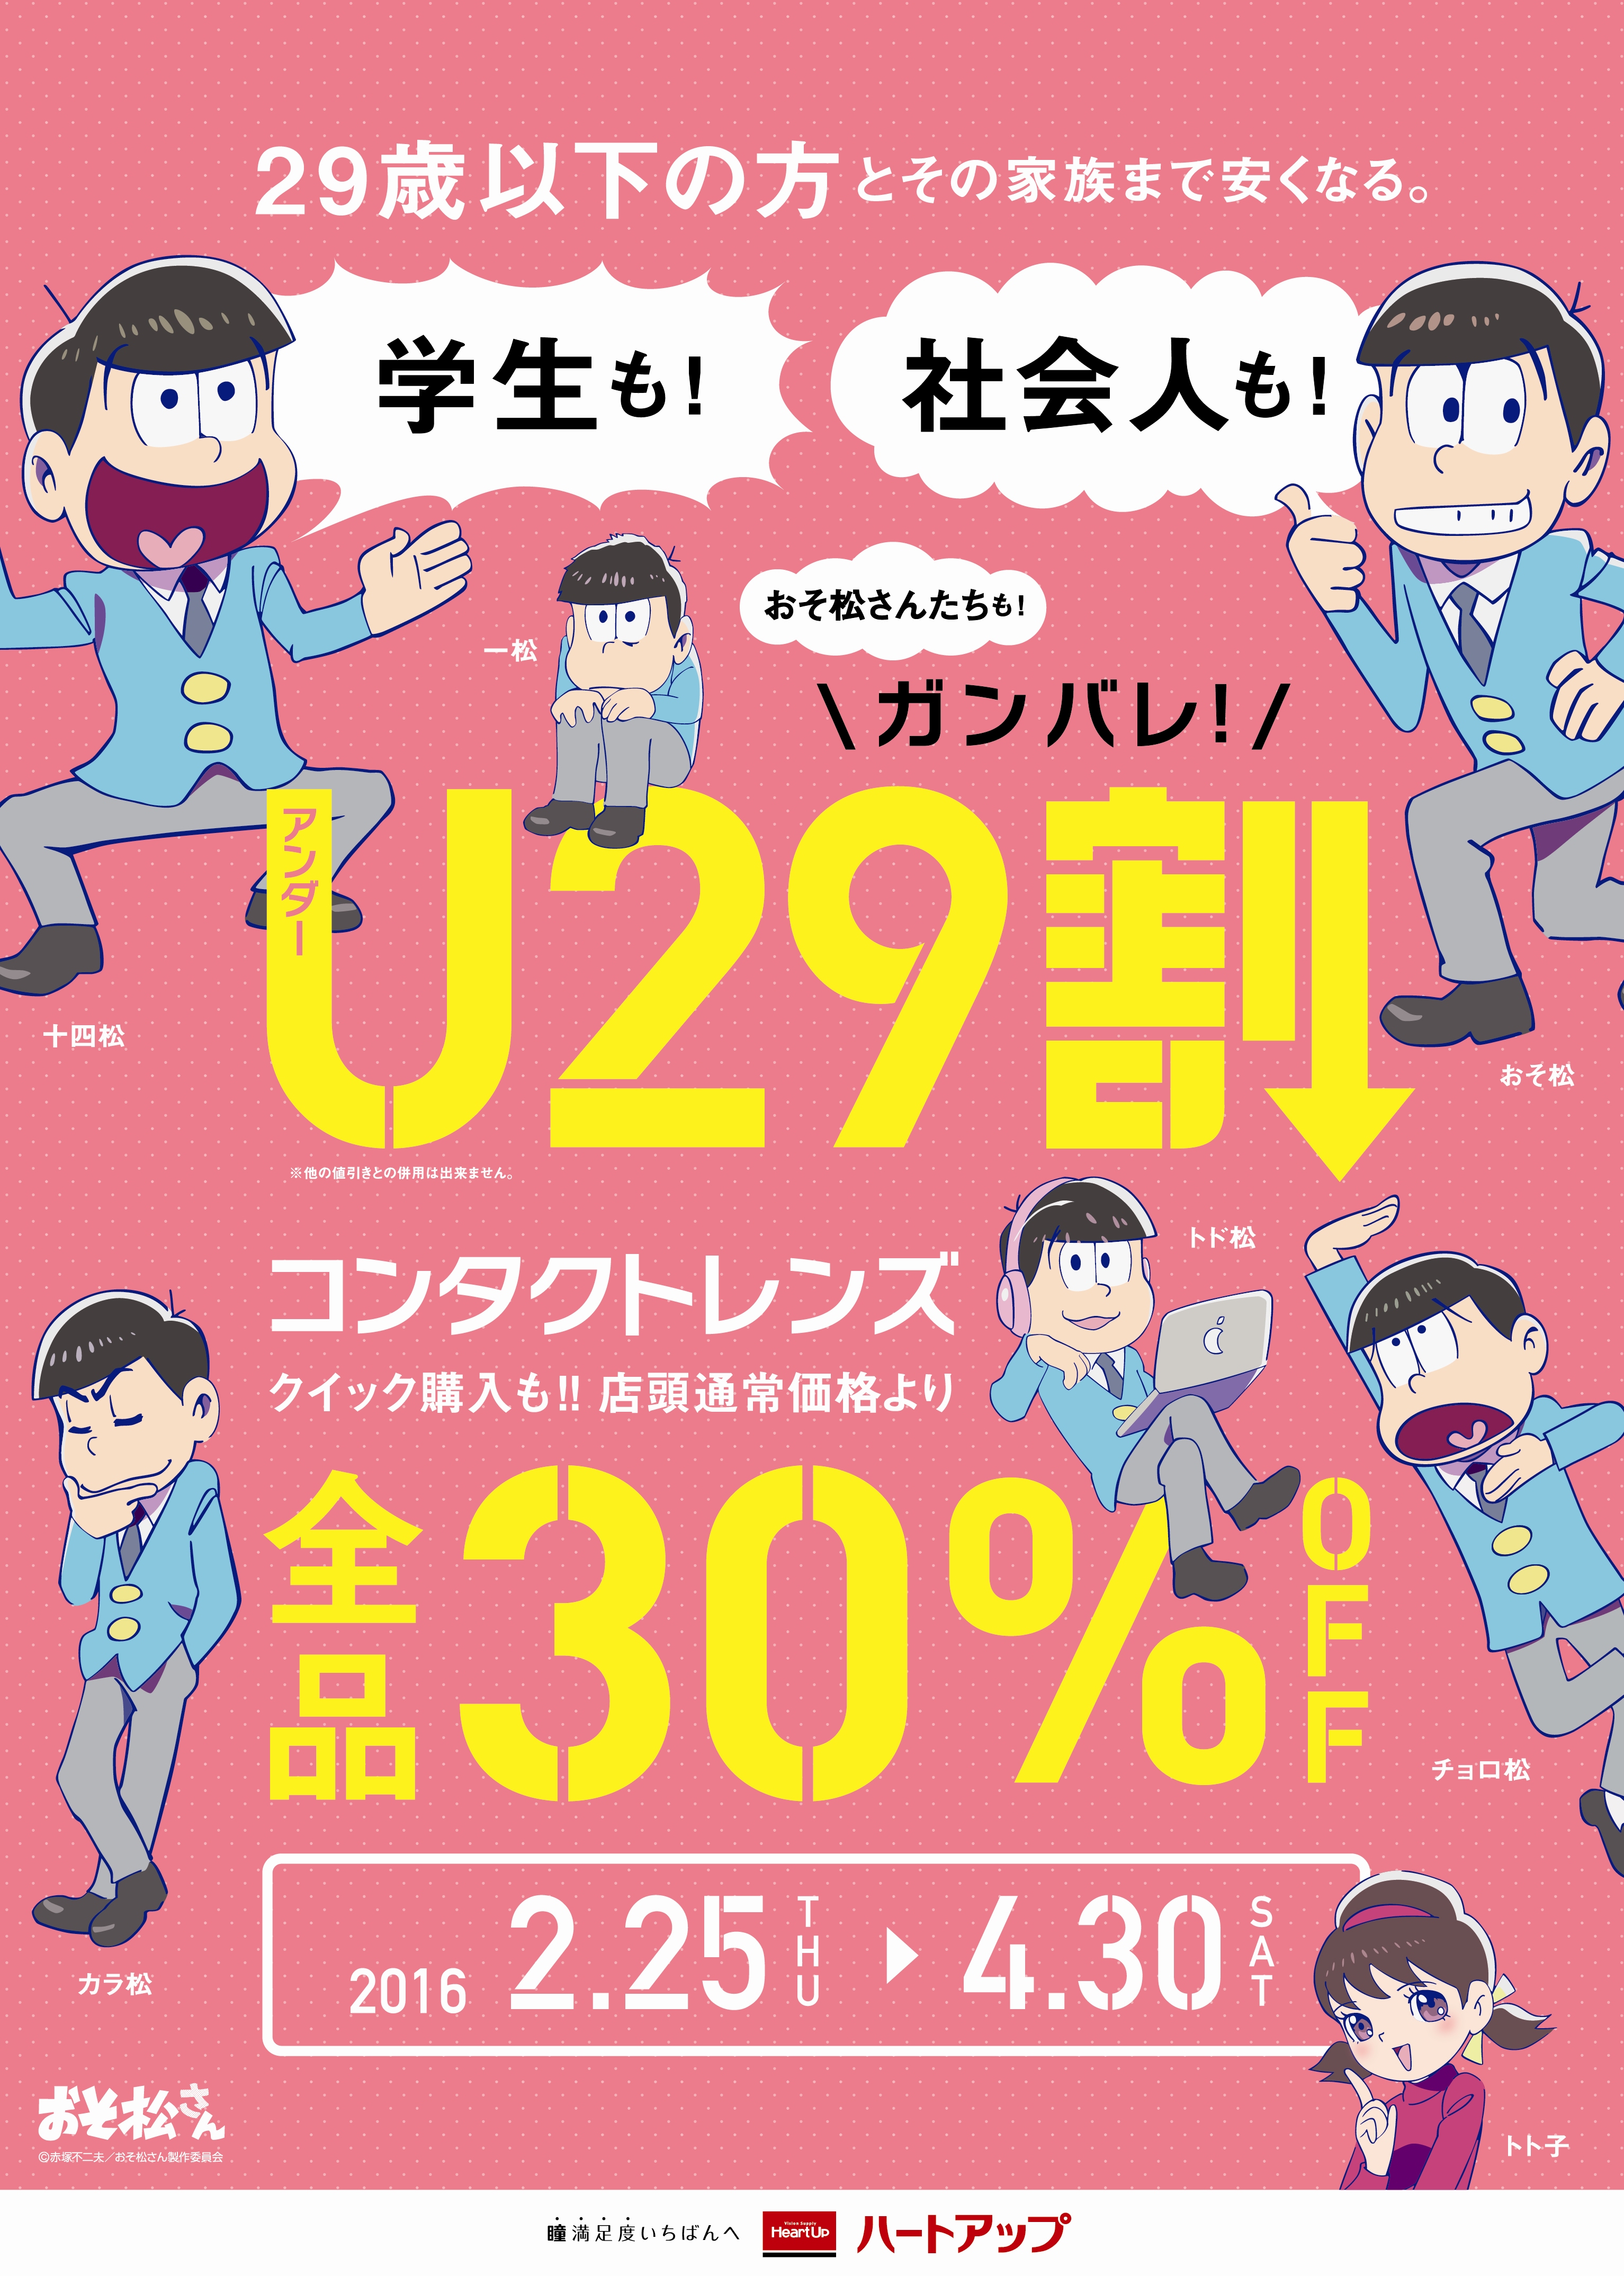 おそ松 さん も割引対象 全国コンタクトレンズ メガネのハートアップが 29歳以下を対象とした U29割 キャンペーンを開始 株式会社日本オプティカルのプレスリリース